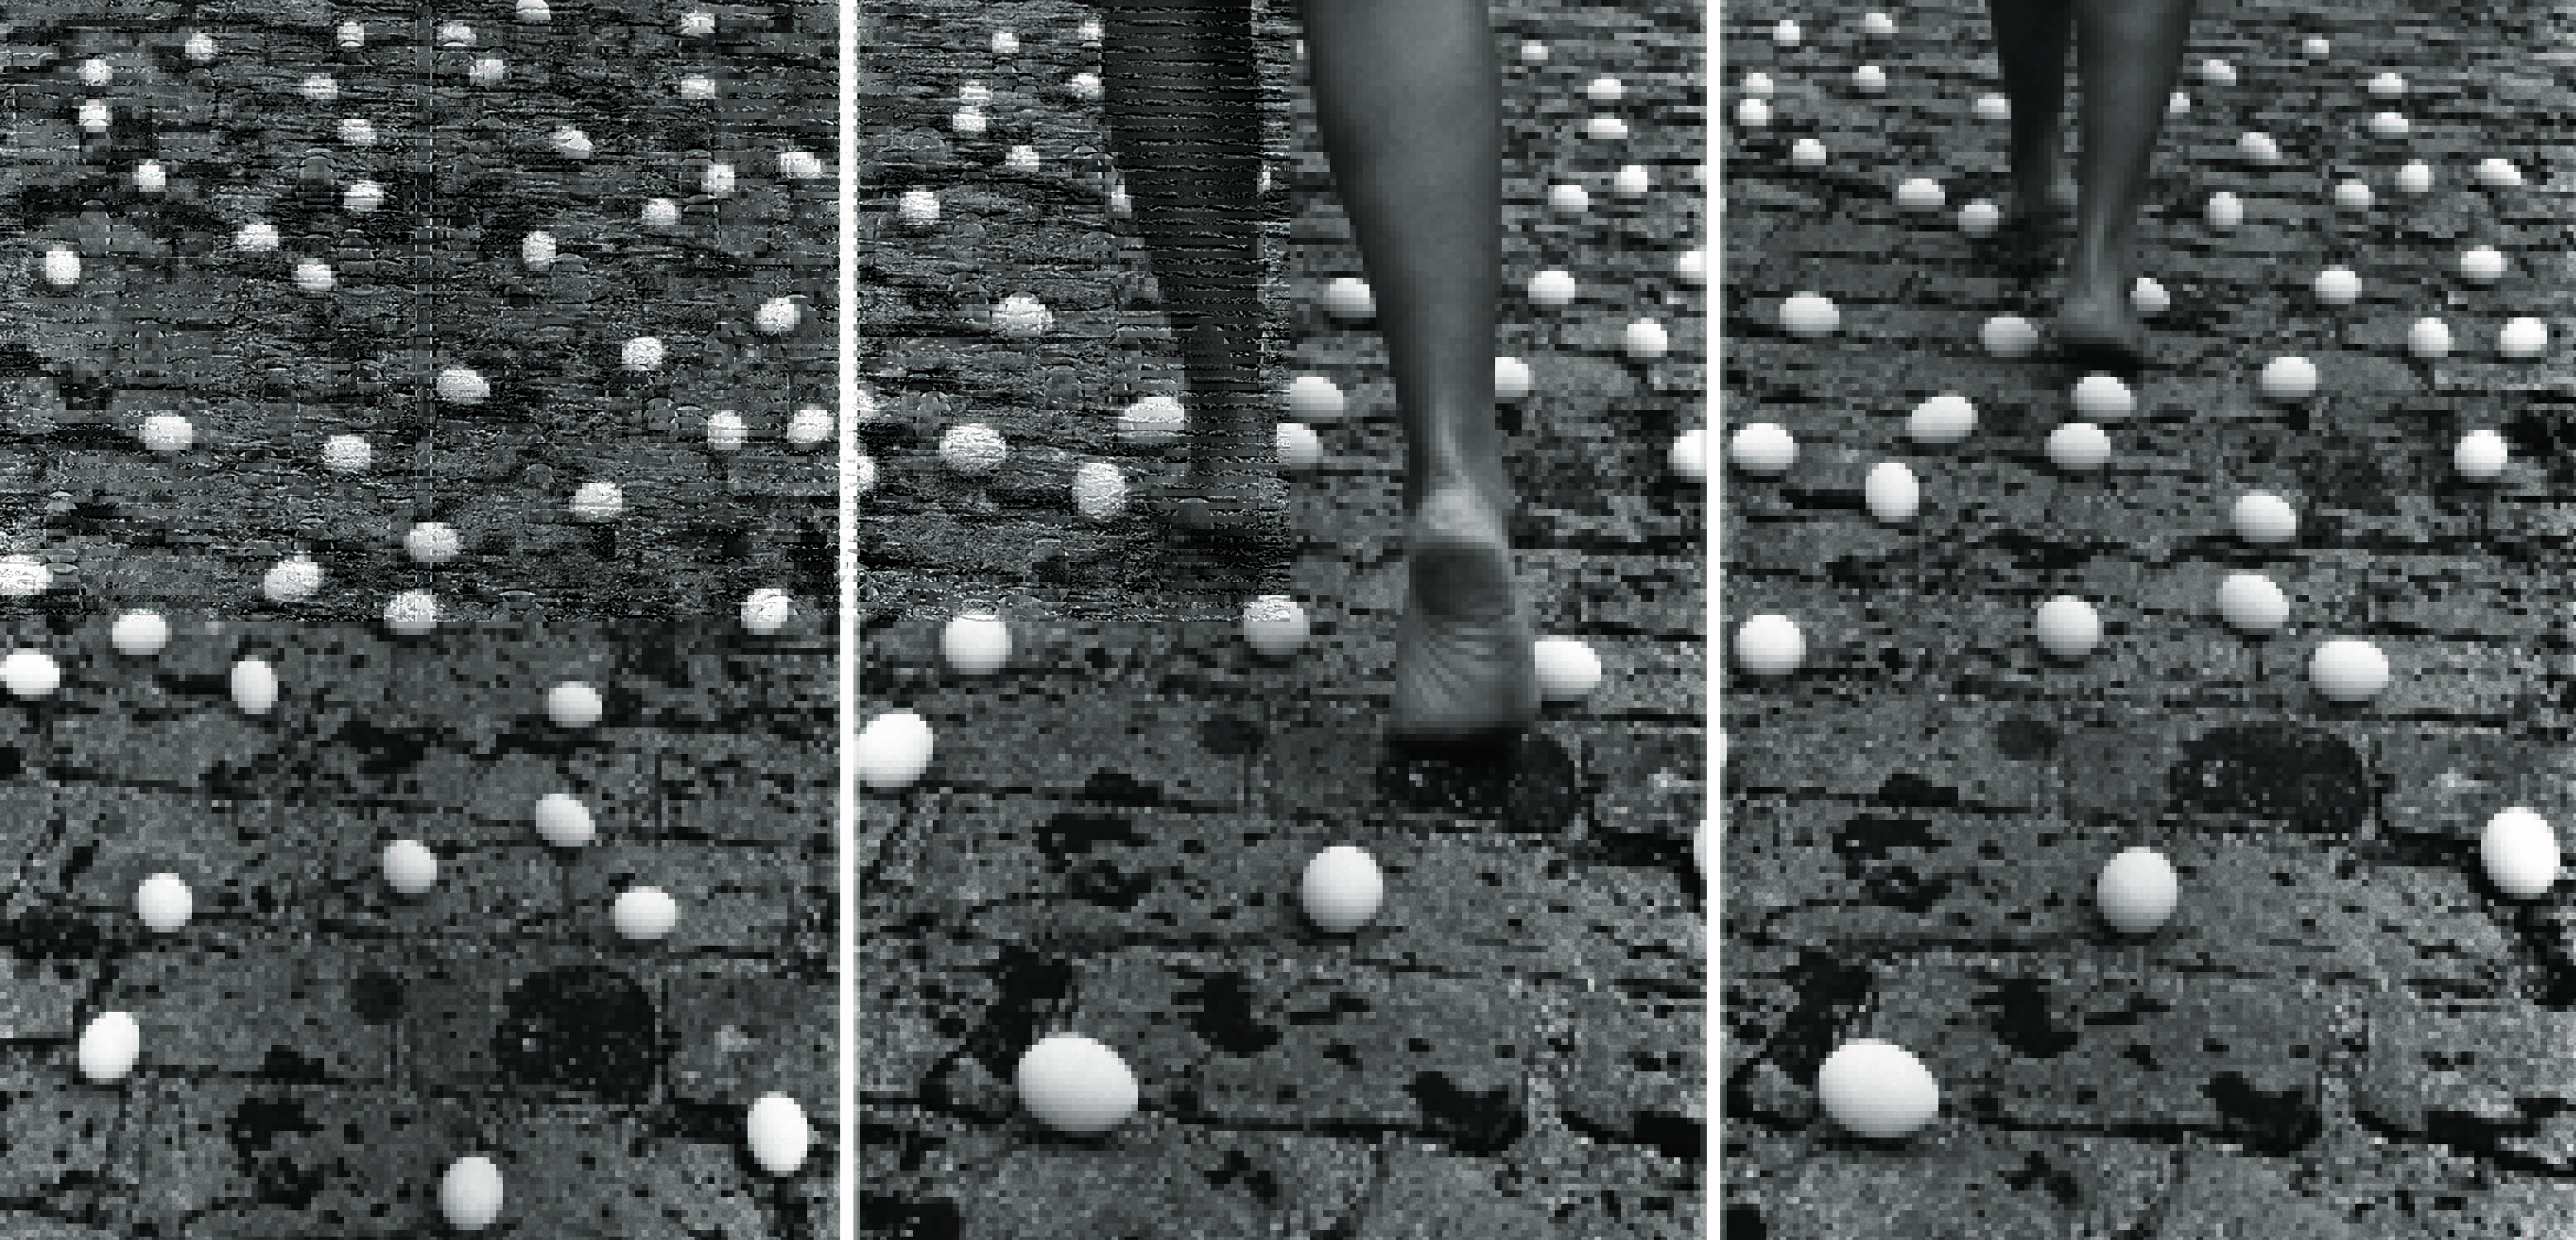 Imagem em preto e branco mostra três fotos de chão com ovos. Na foto do meio, pernas de uma pessoa caminhando sobre o chão.